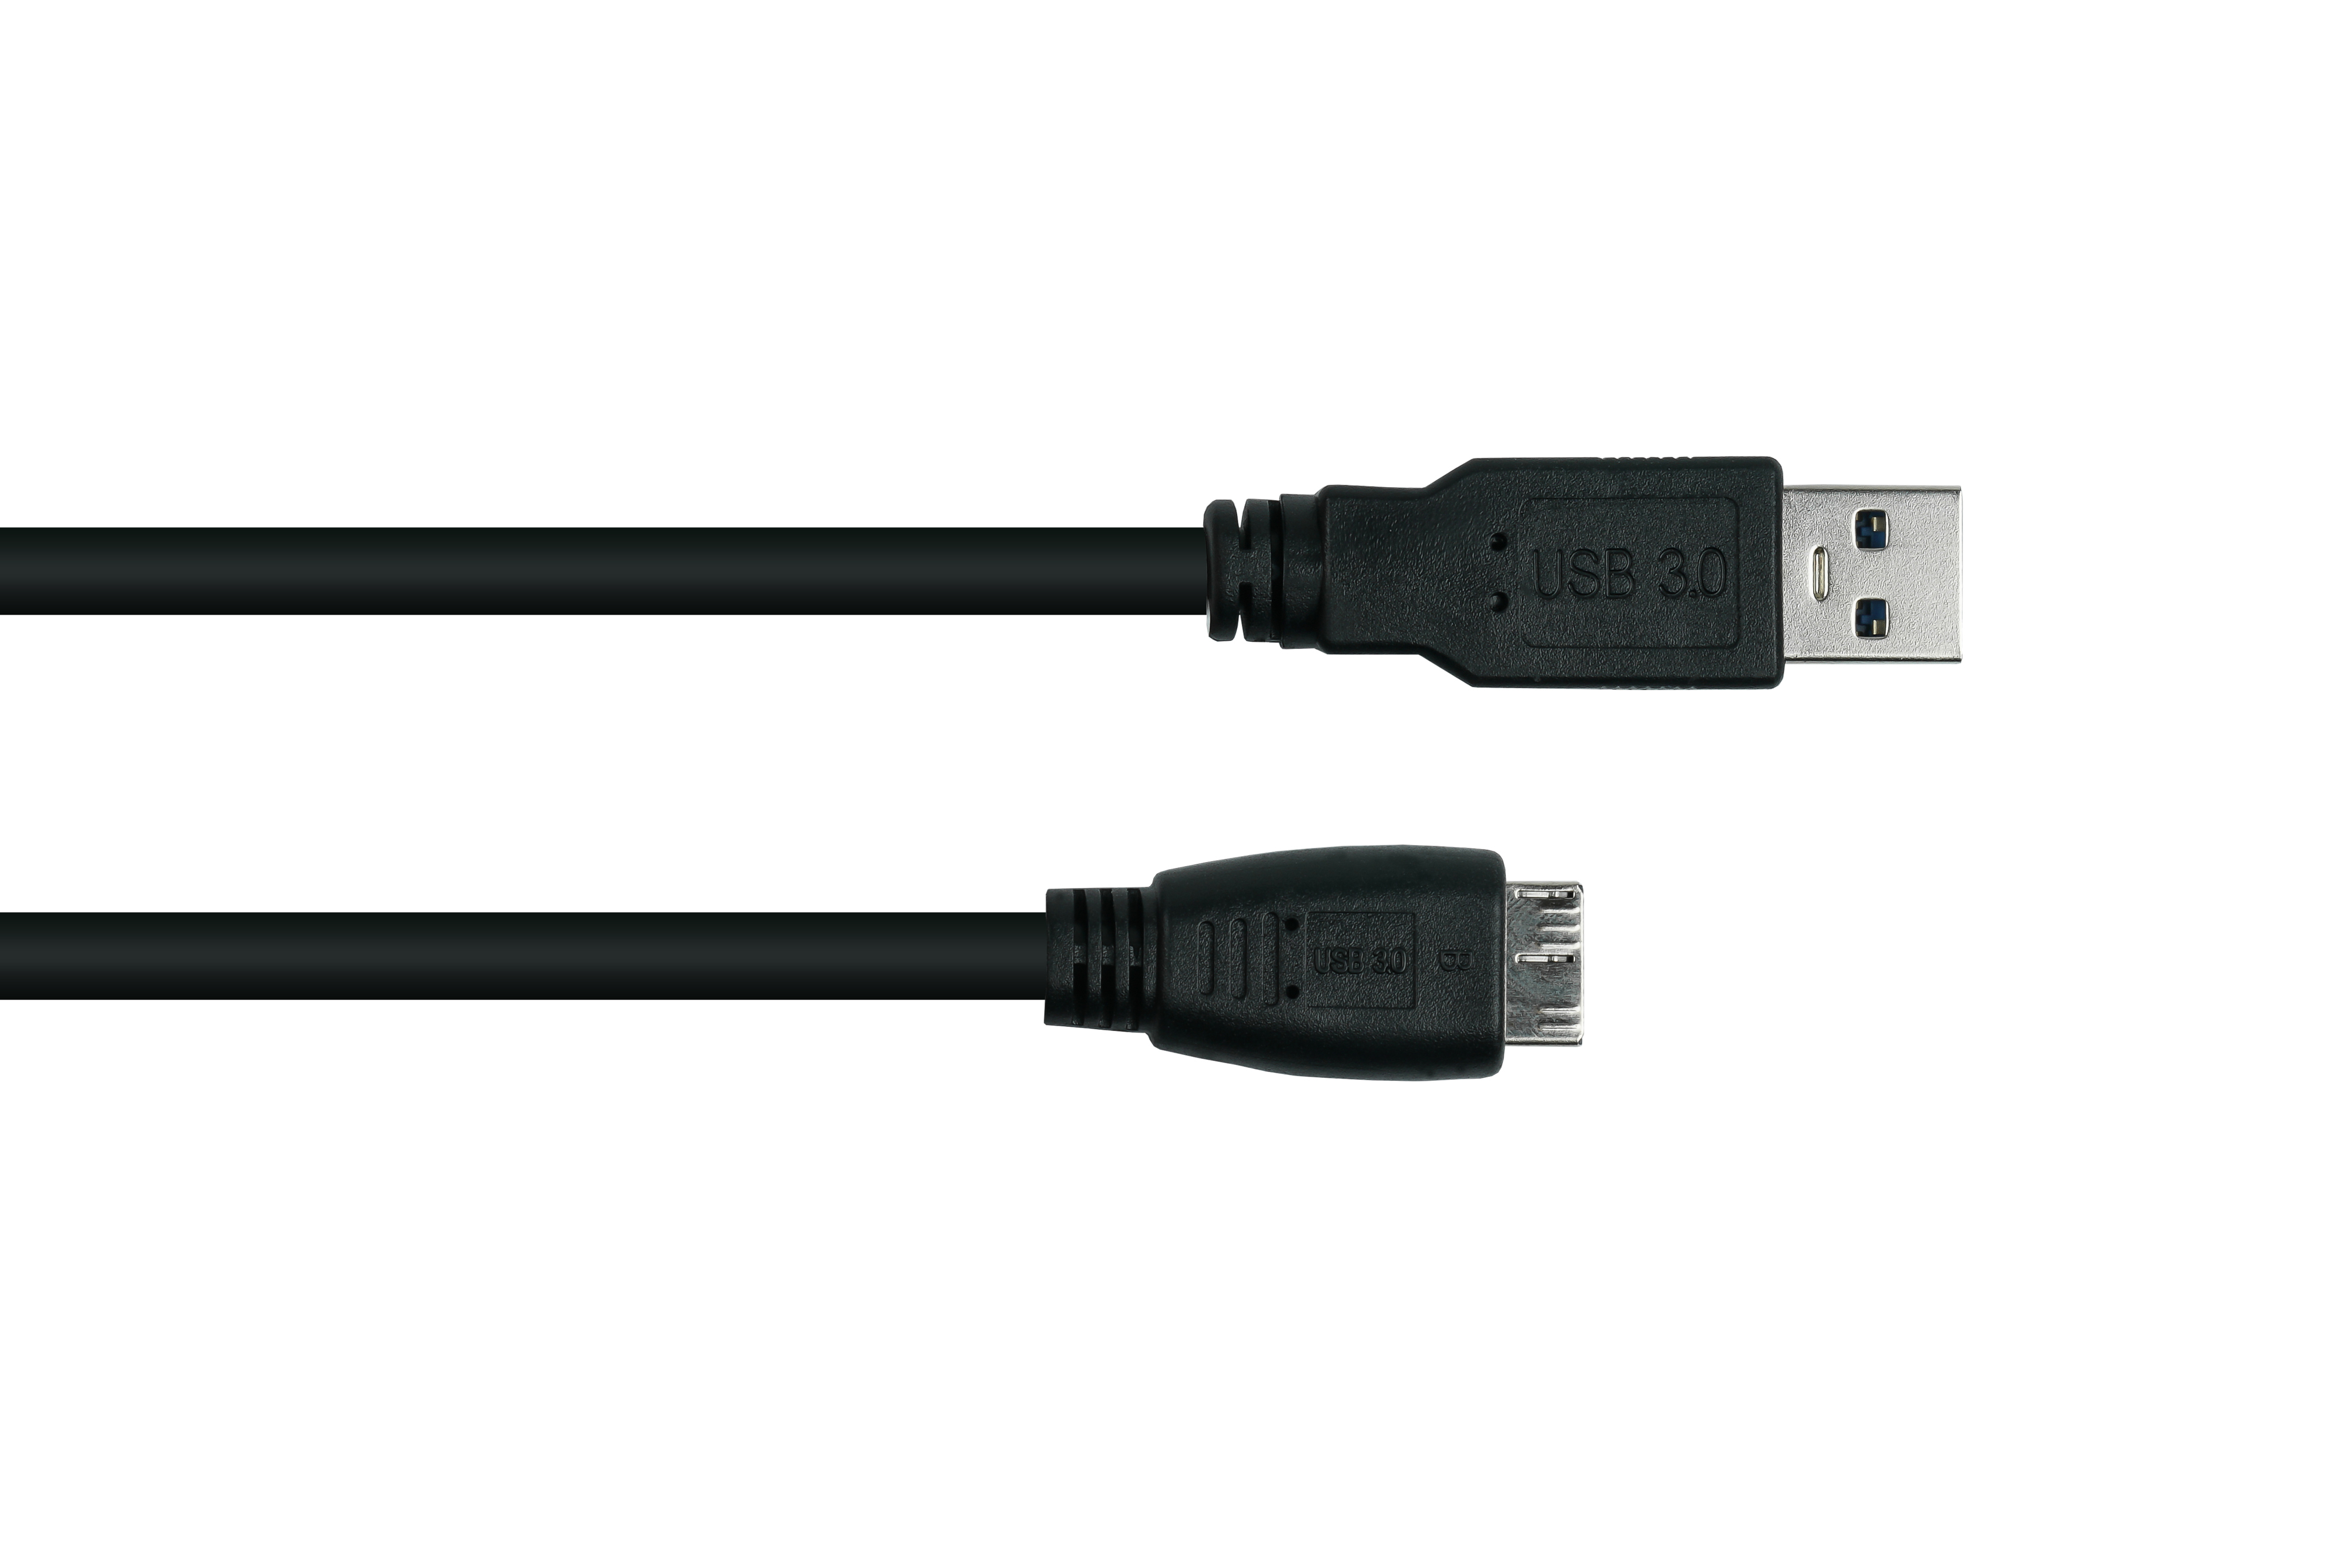 KABELMEISTER Stecker Kabel schwarz 3.0 AWG24, Micro A B,Premium, Stecker / KUPFER, AWG28 UL, USB an